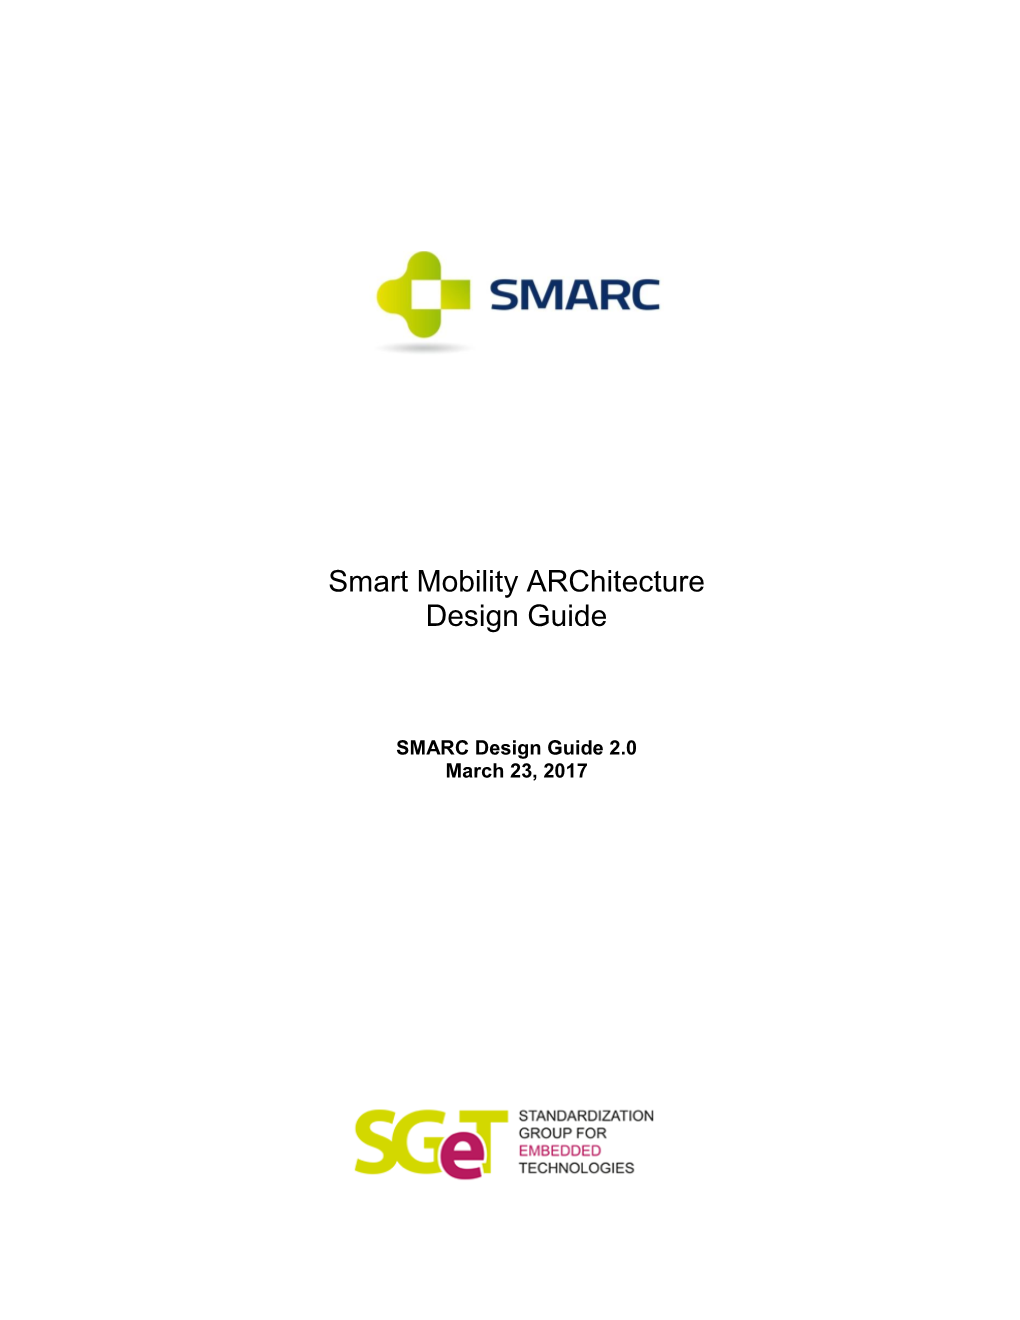 SMARC Design Guide 2.0 March 23, 2017